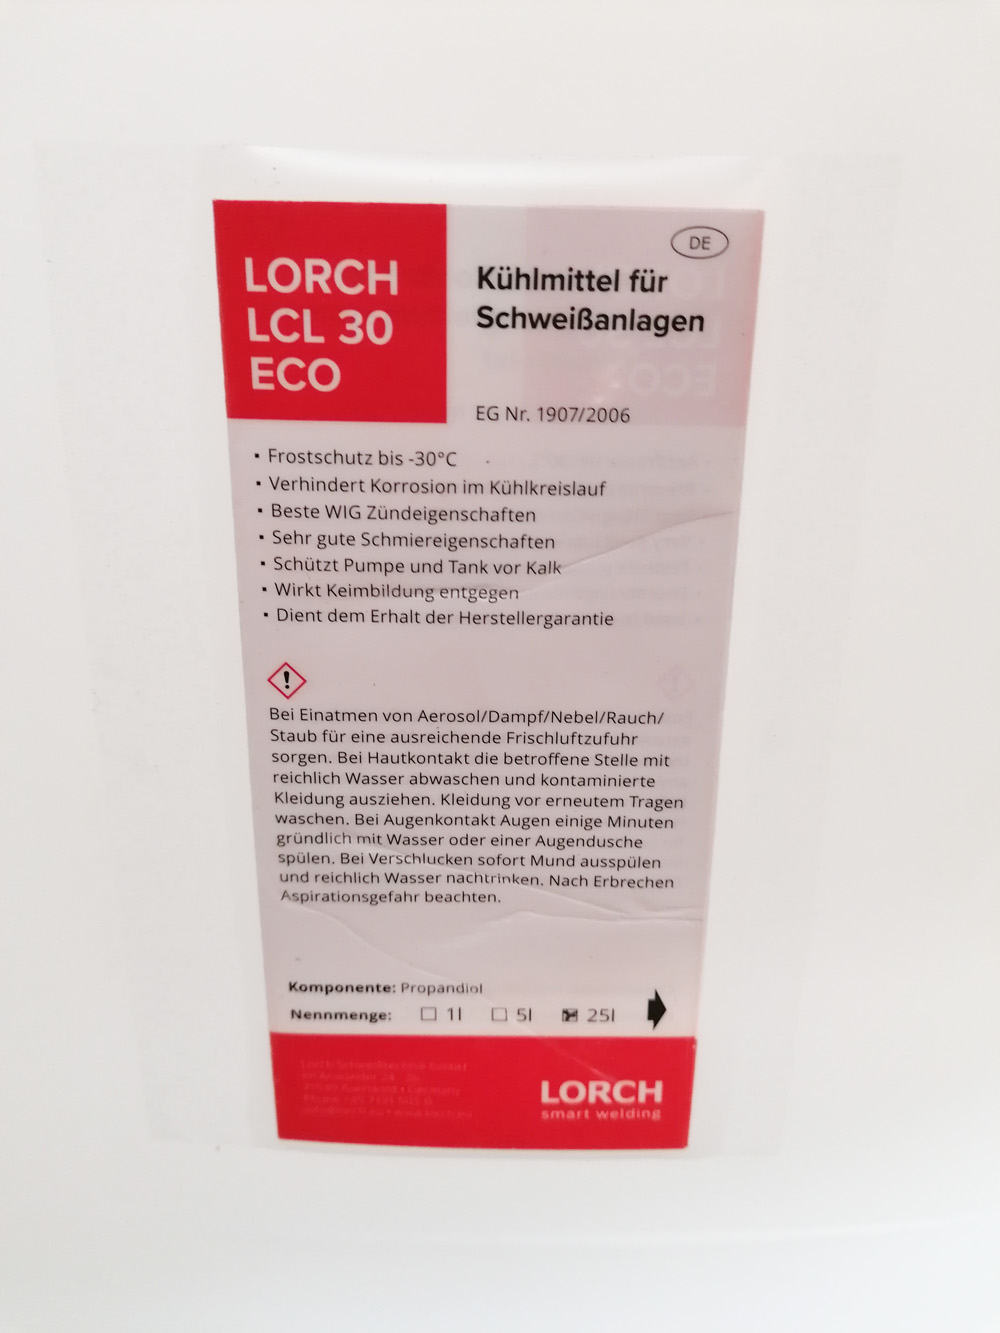 https://schweissmaterial.com/wp-content/uploads/2022/07/Lorch-LCL-30-ECO-25l-Kanister-Beschreibung.jpg